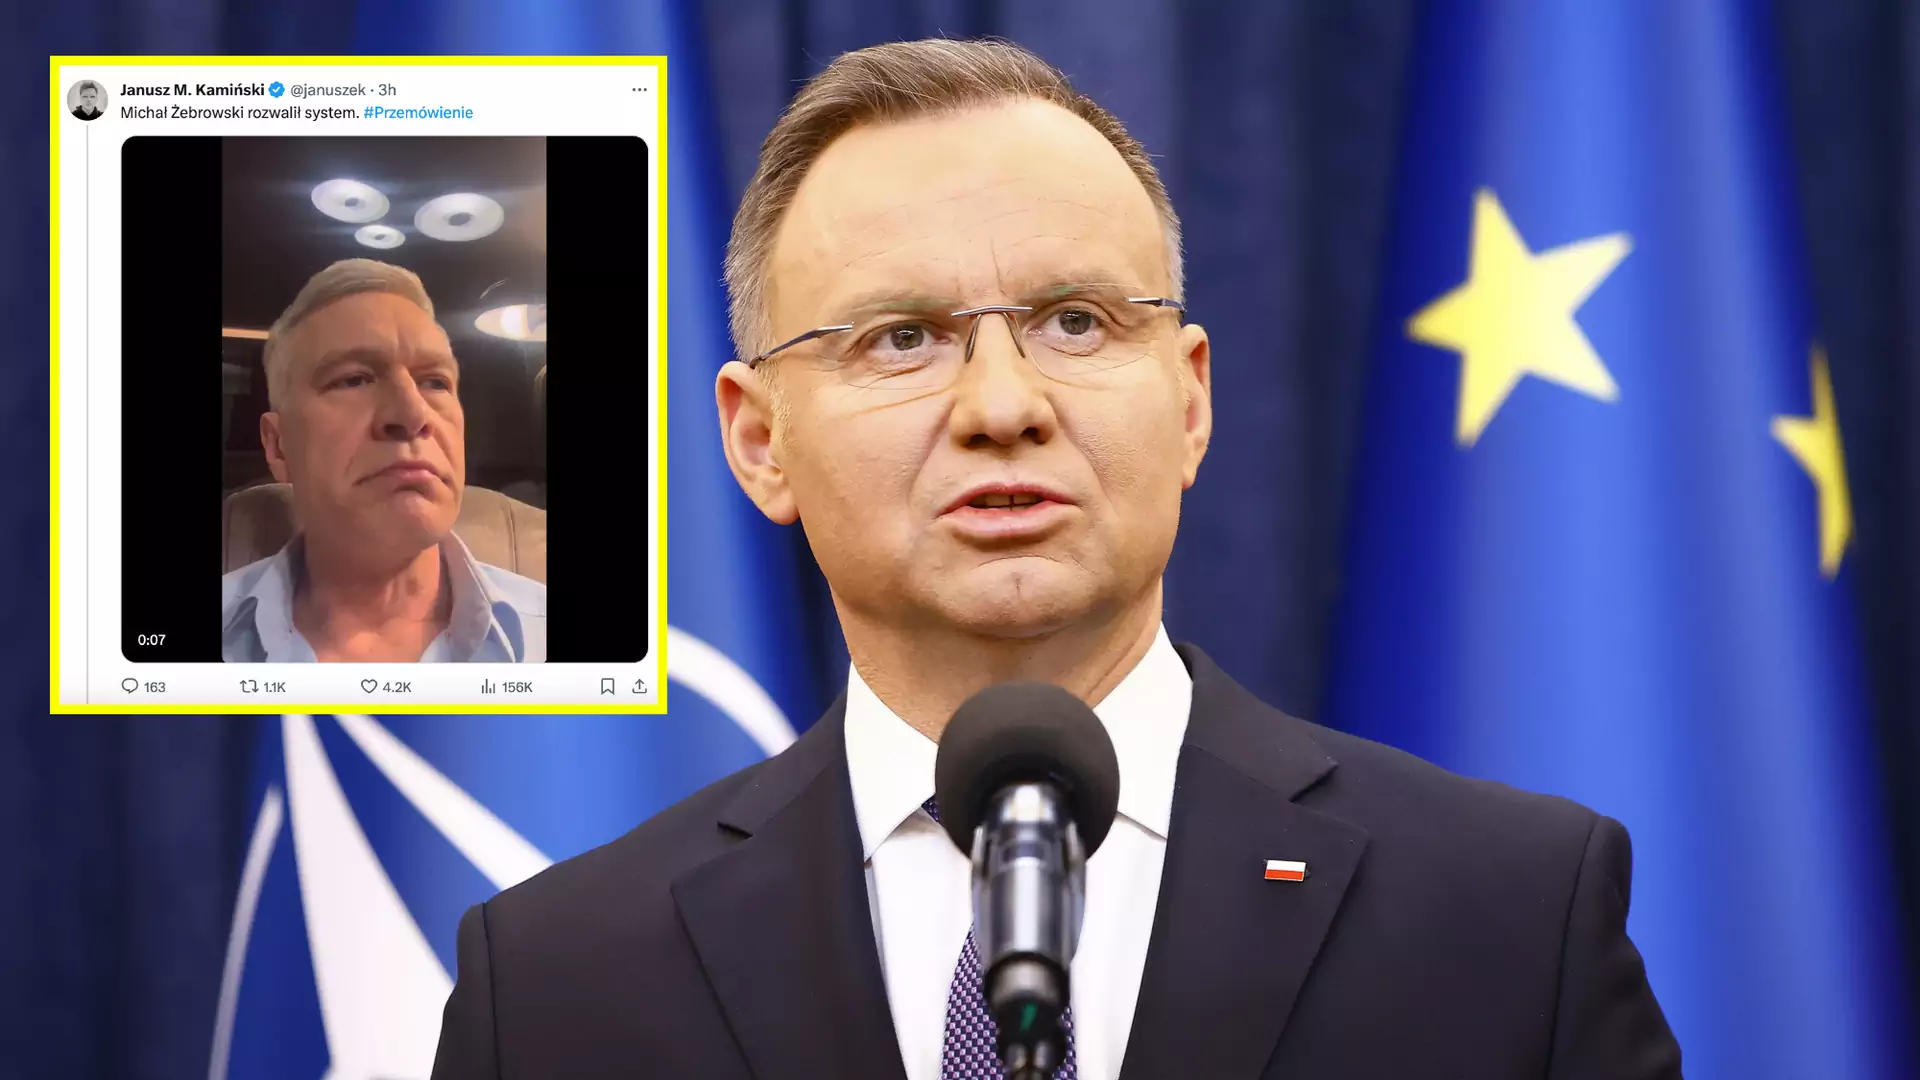 Michał Żebrowski sparodiował prezydenta. Nagranie jest hitem sieci